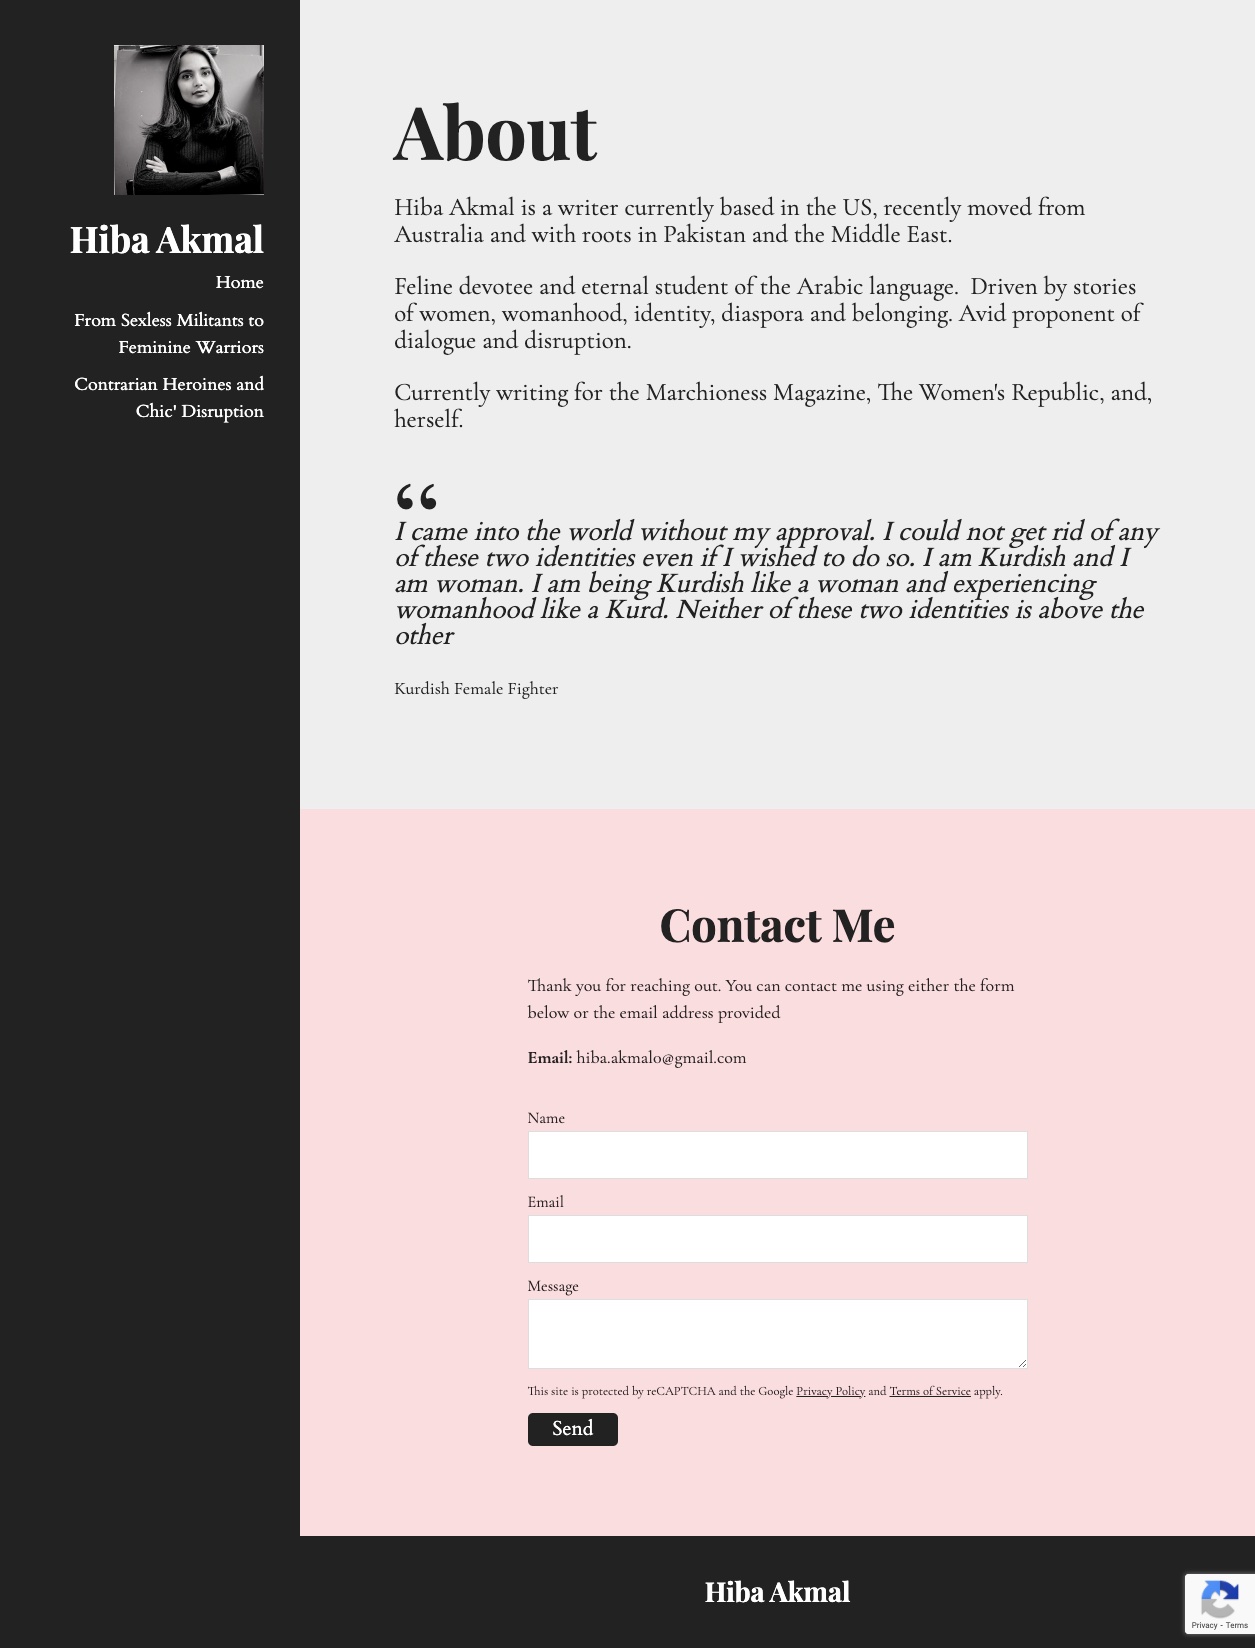 Hiba Akmal's Contact Page